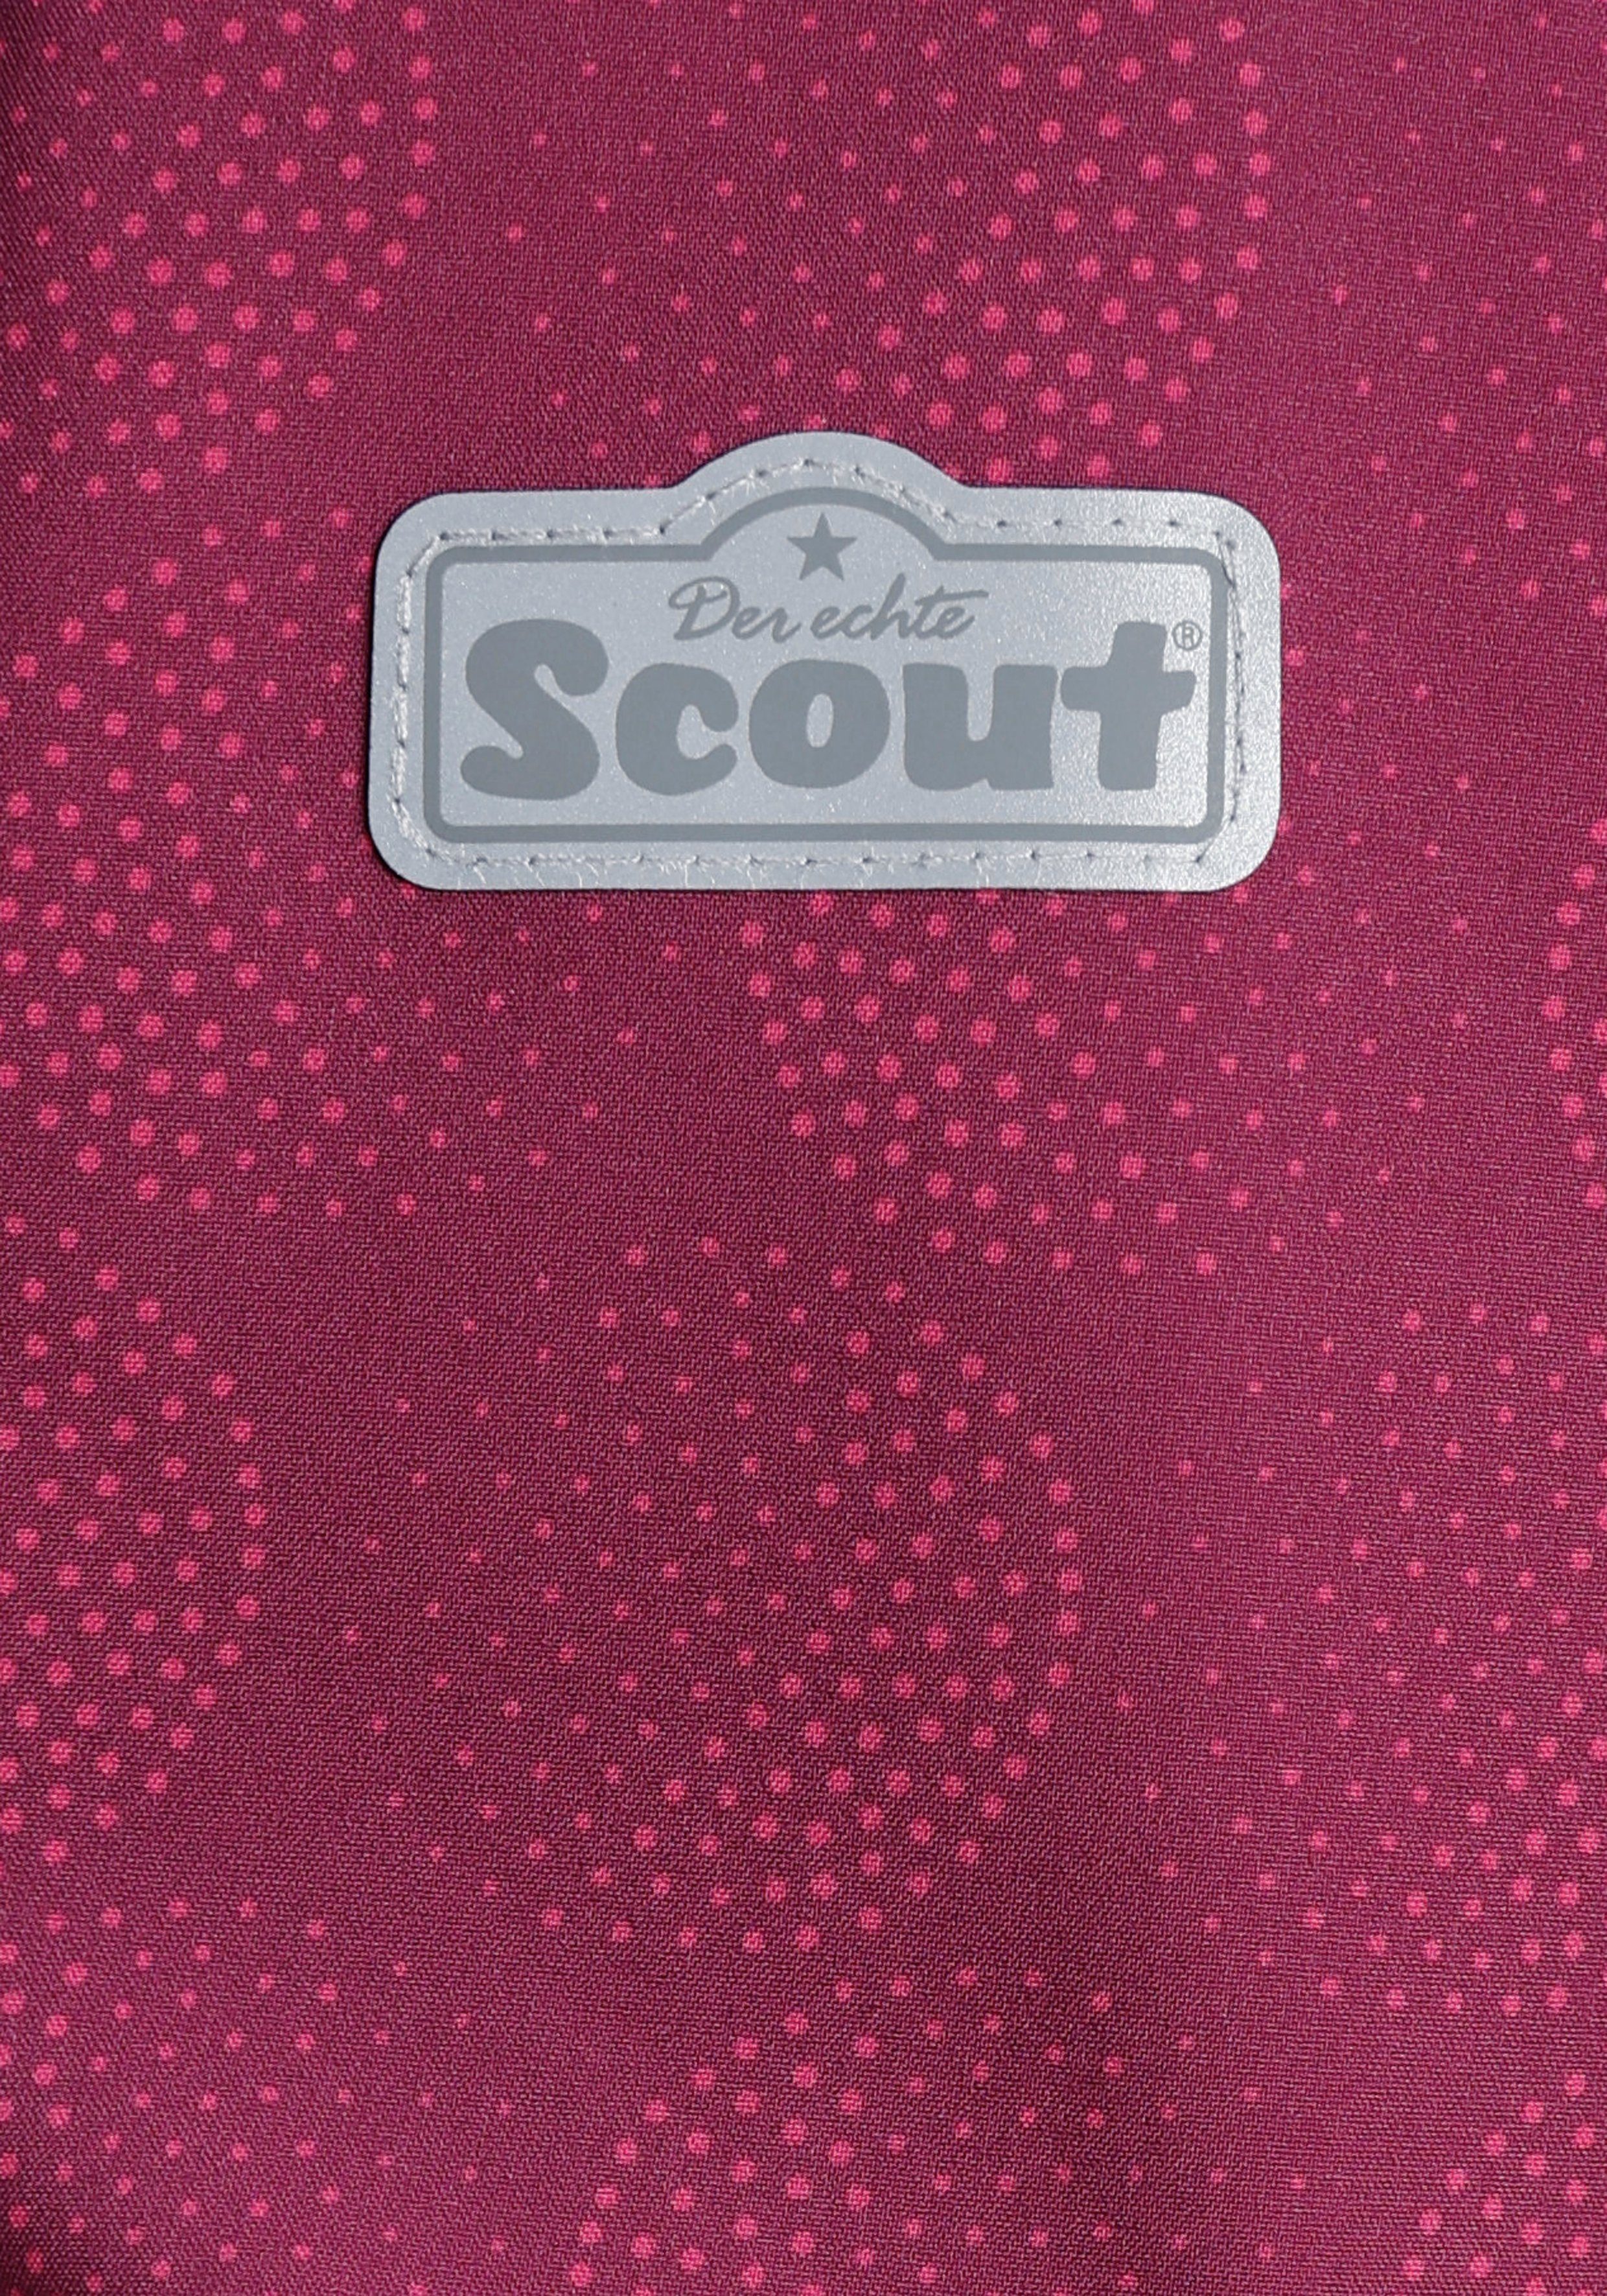 SHIMMER Scout reflektierenden Details mit Softshelljacke